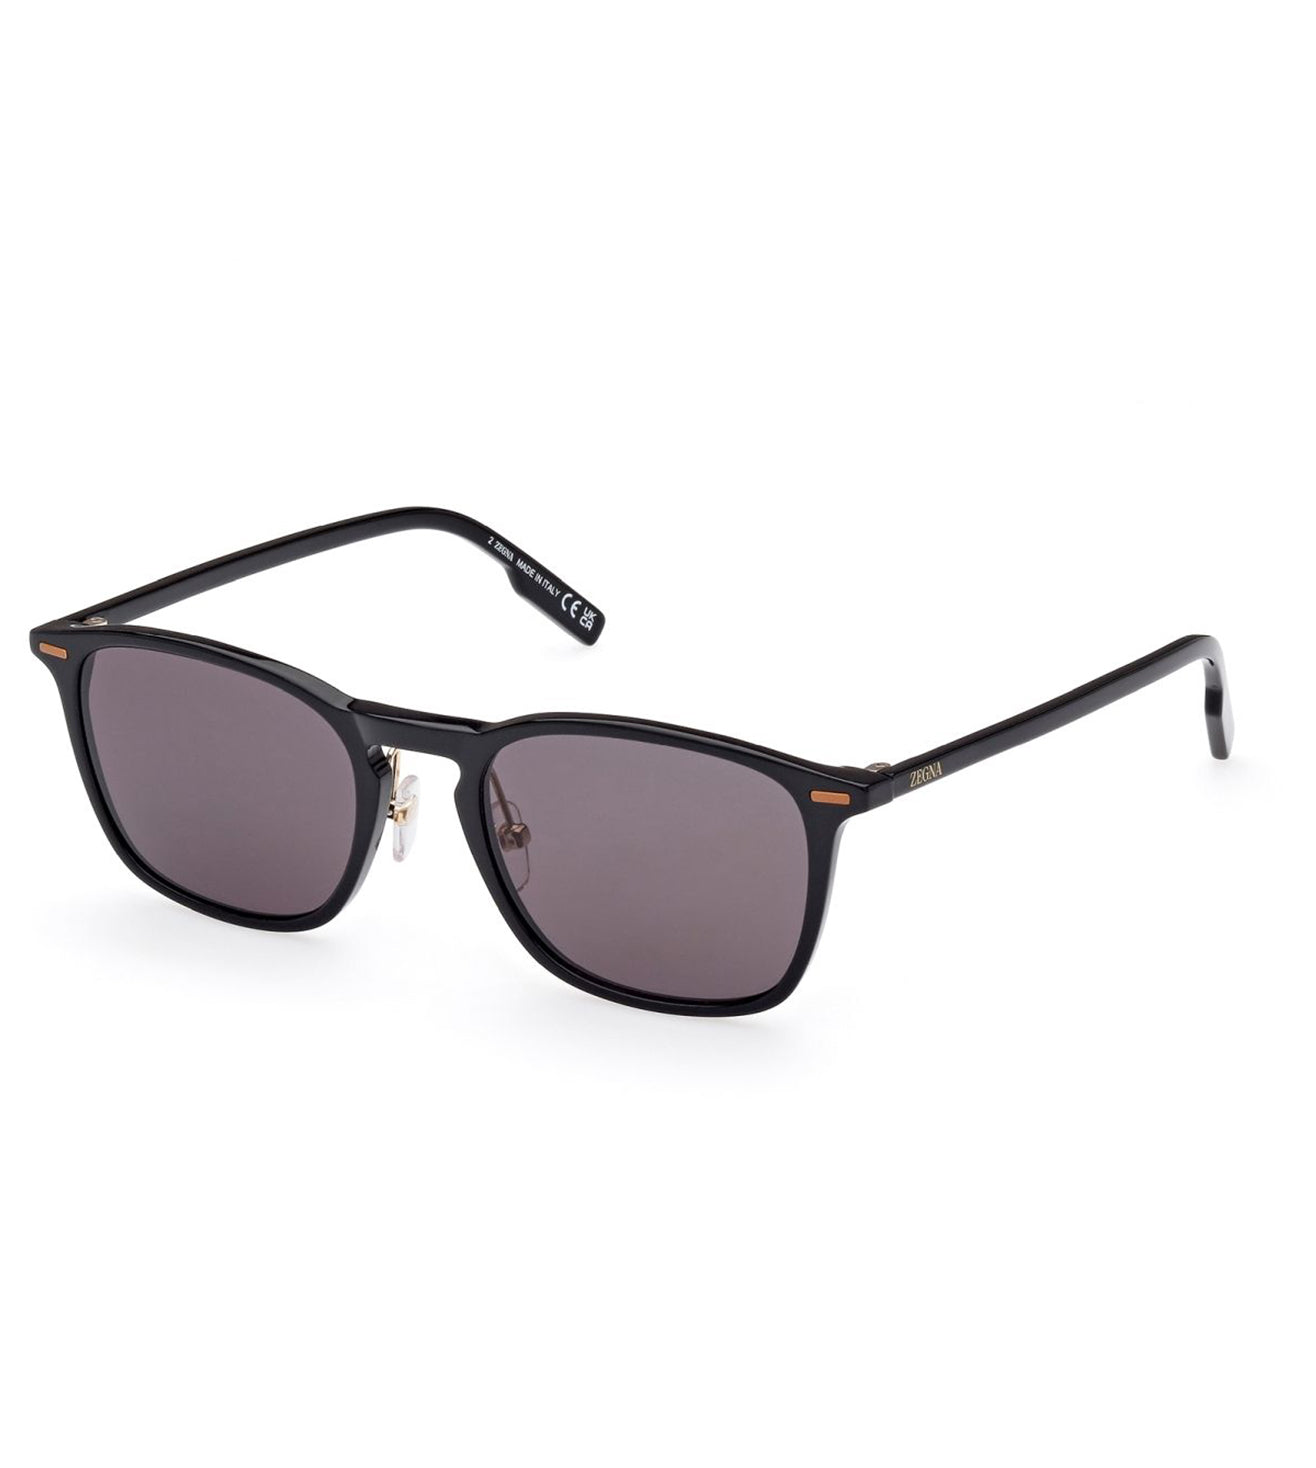 Zegna Men's Smoke Oval Sunglasses